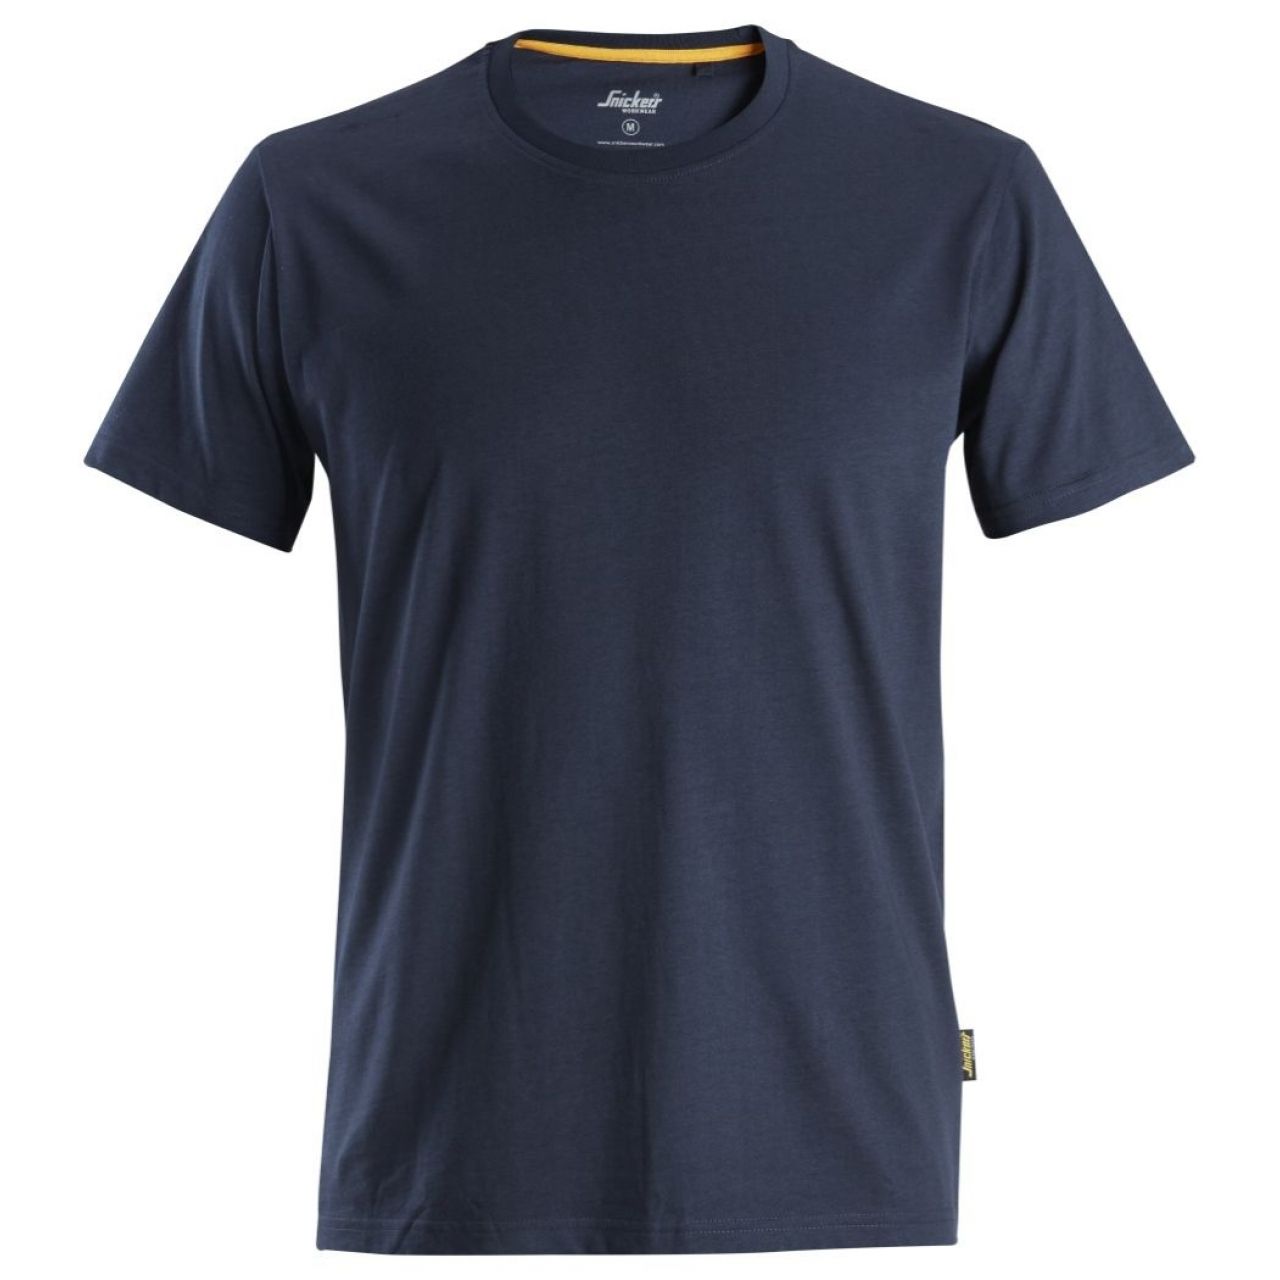 Camiseta de algodón orgánico AllroundWork Azul marino talla M